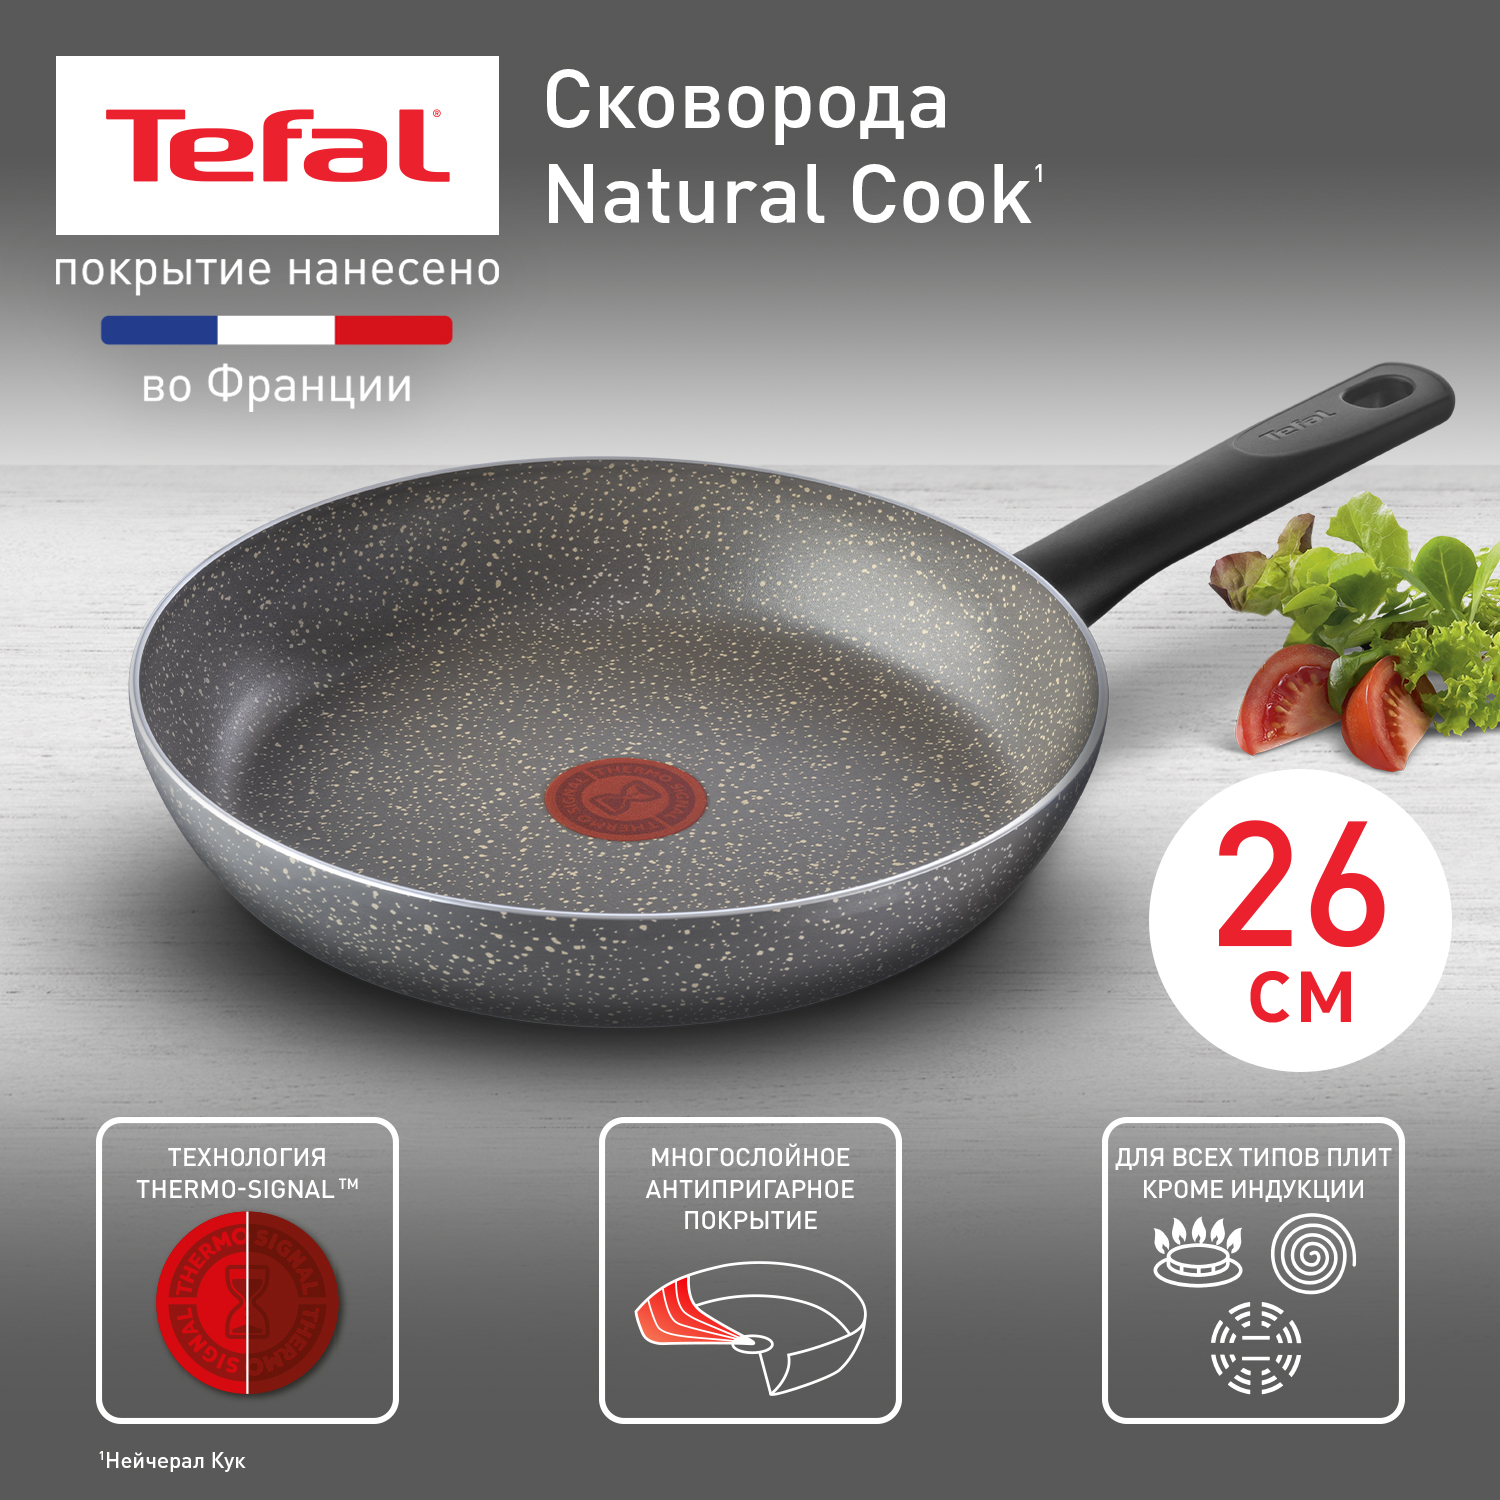 Сковорода Tefal Natural Cook 04213126, 26 см, с индикатором нагрева